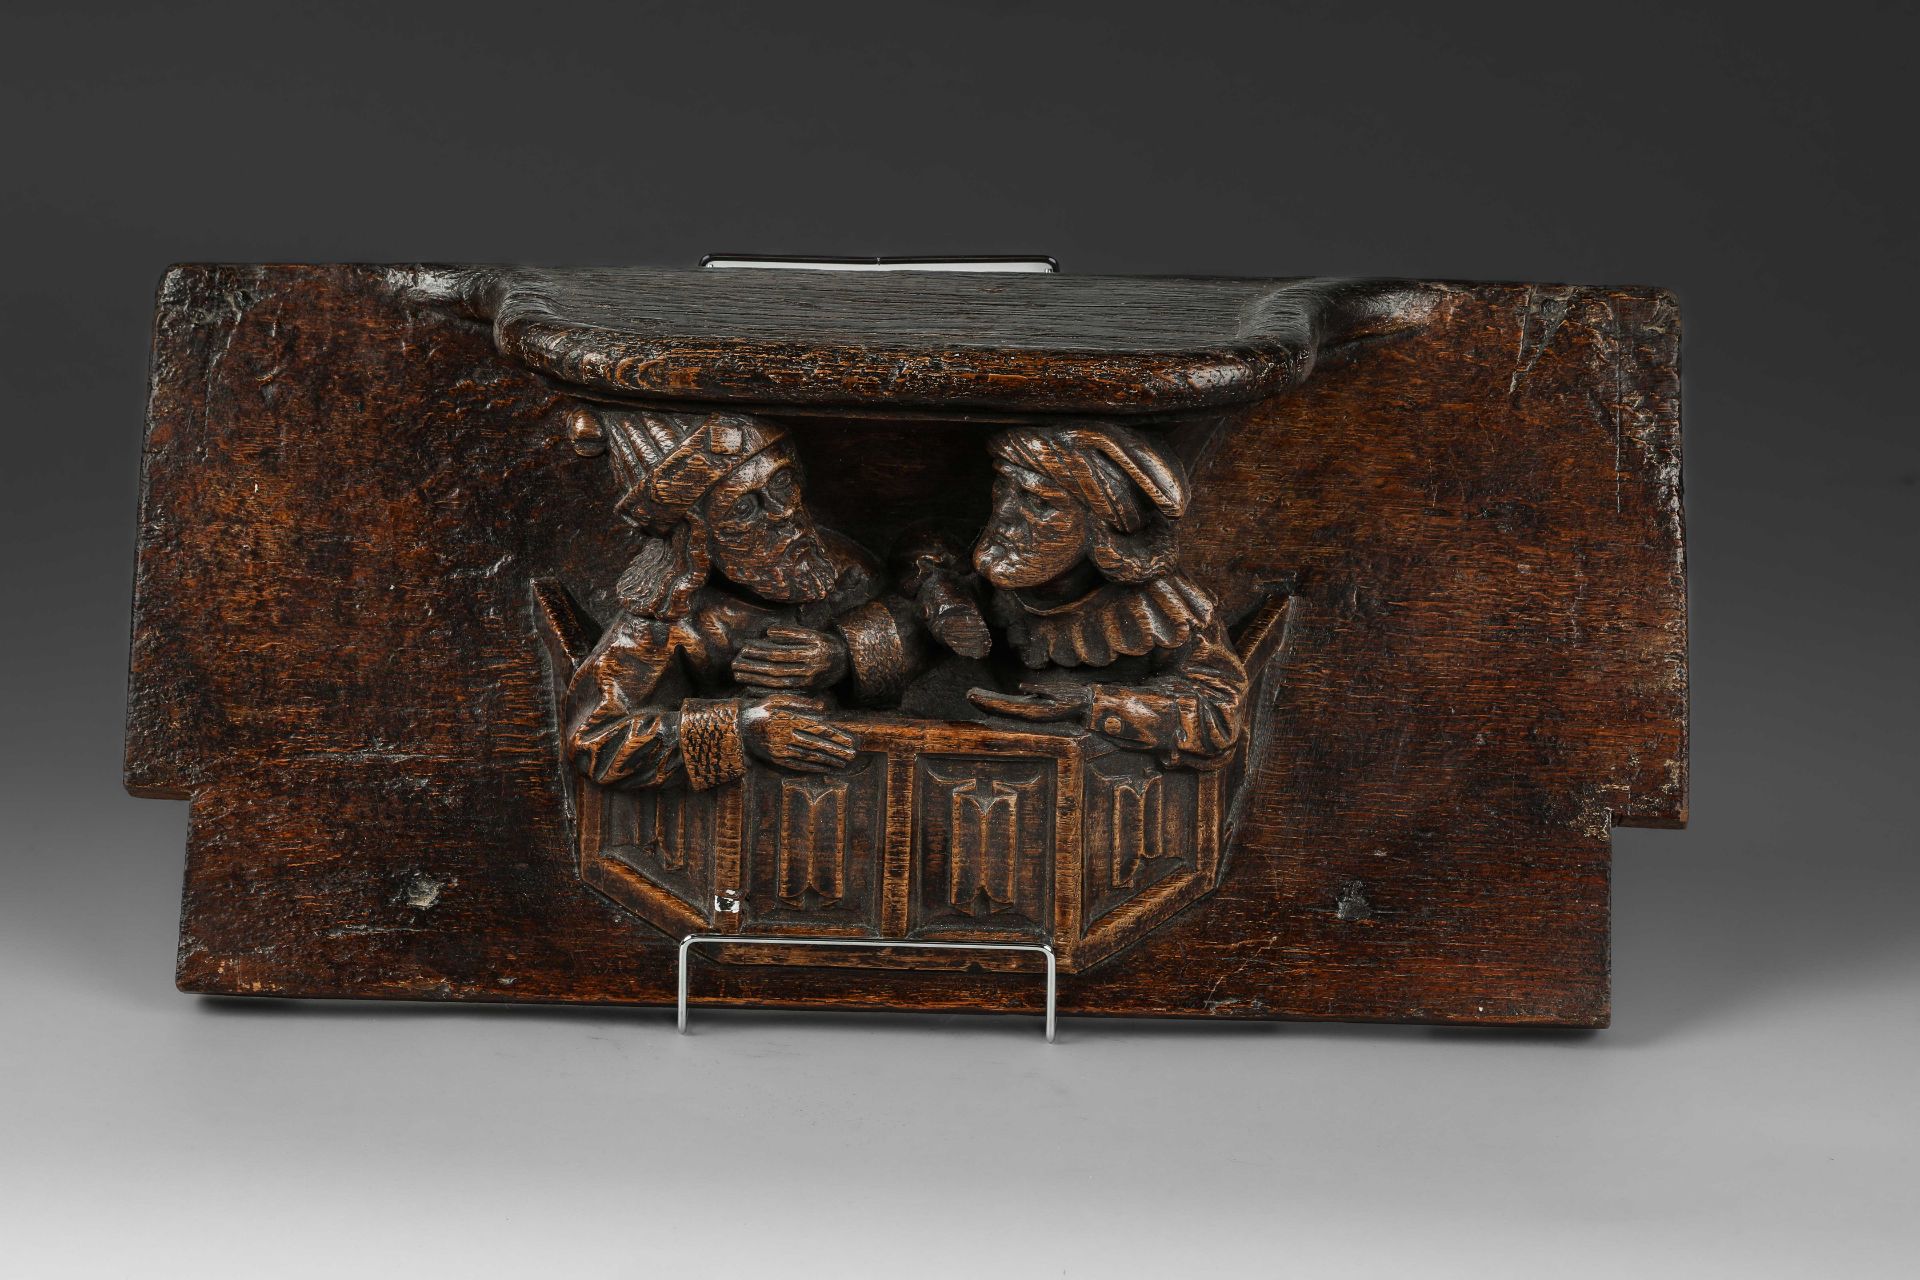 Miséricorde, petit siège mobile incliné avec un rebord surélevé au-dessus de deux figures masculines